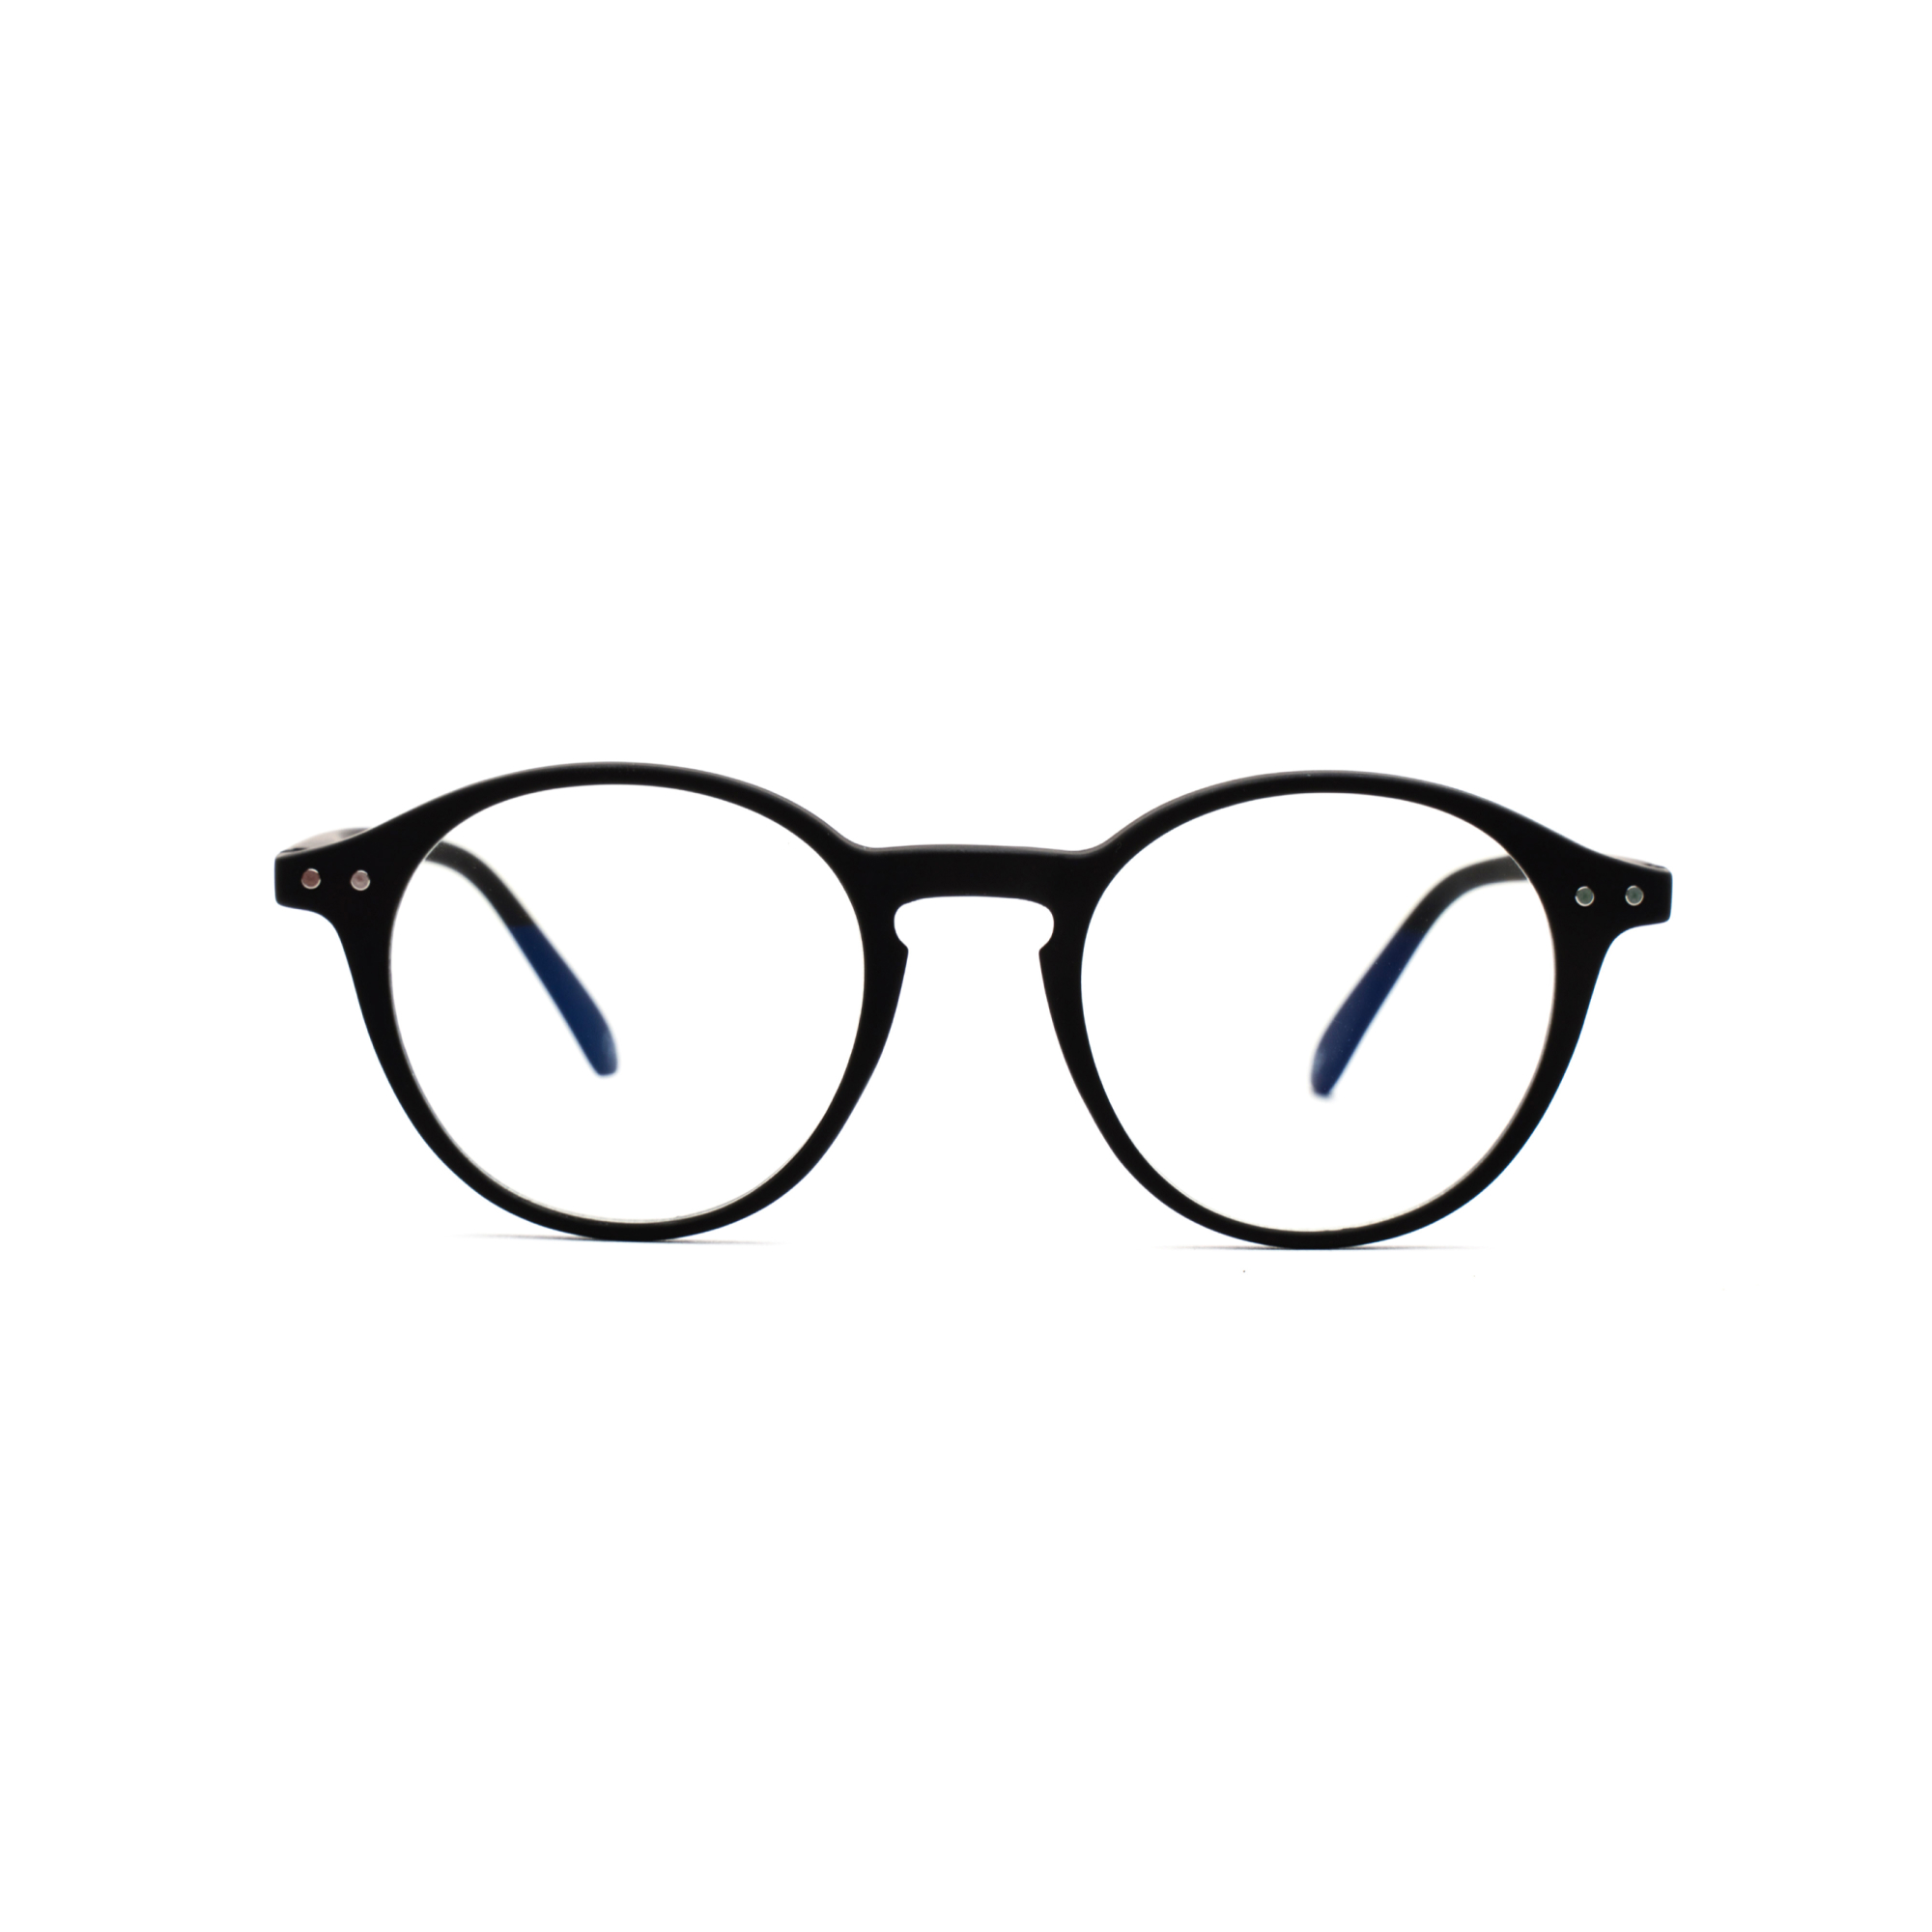 – Luca BlueVision m Men's, Reading Glasses